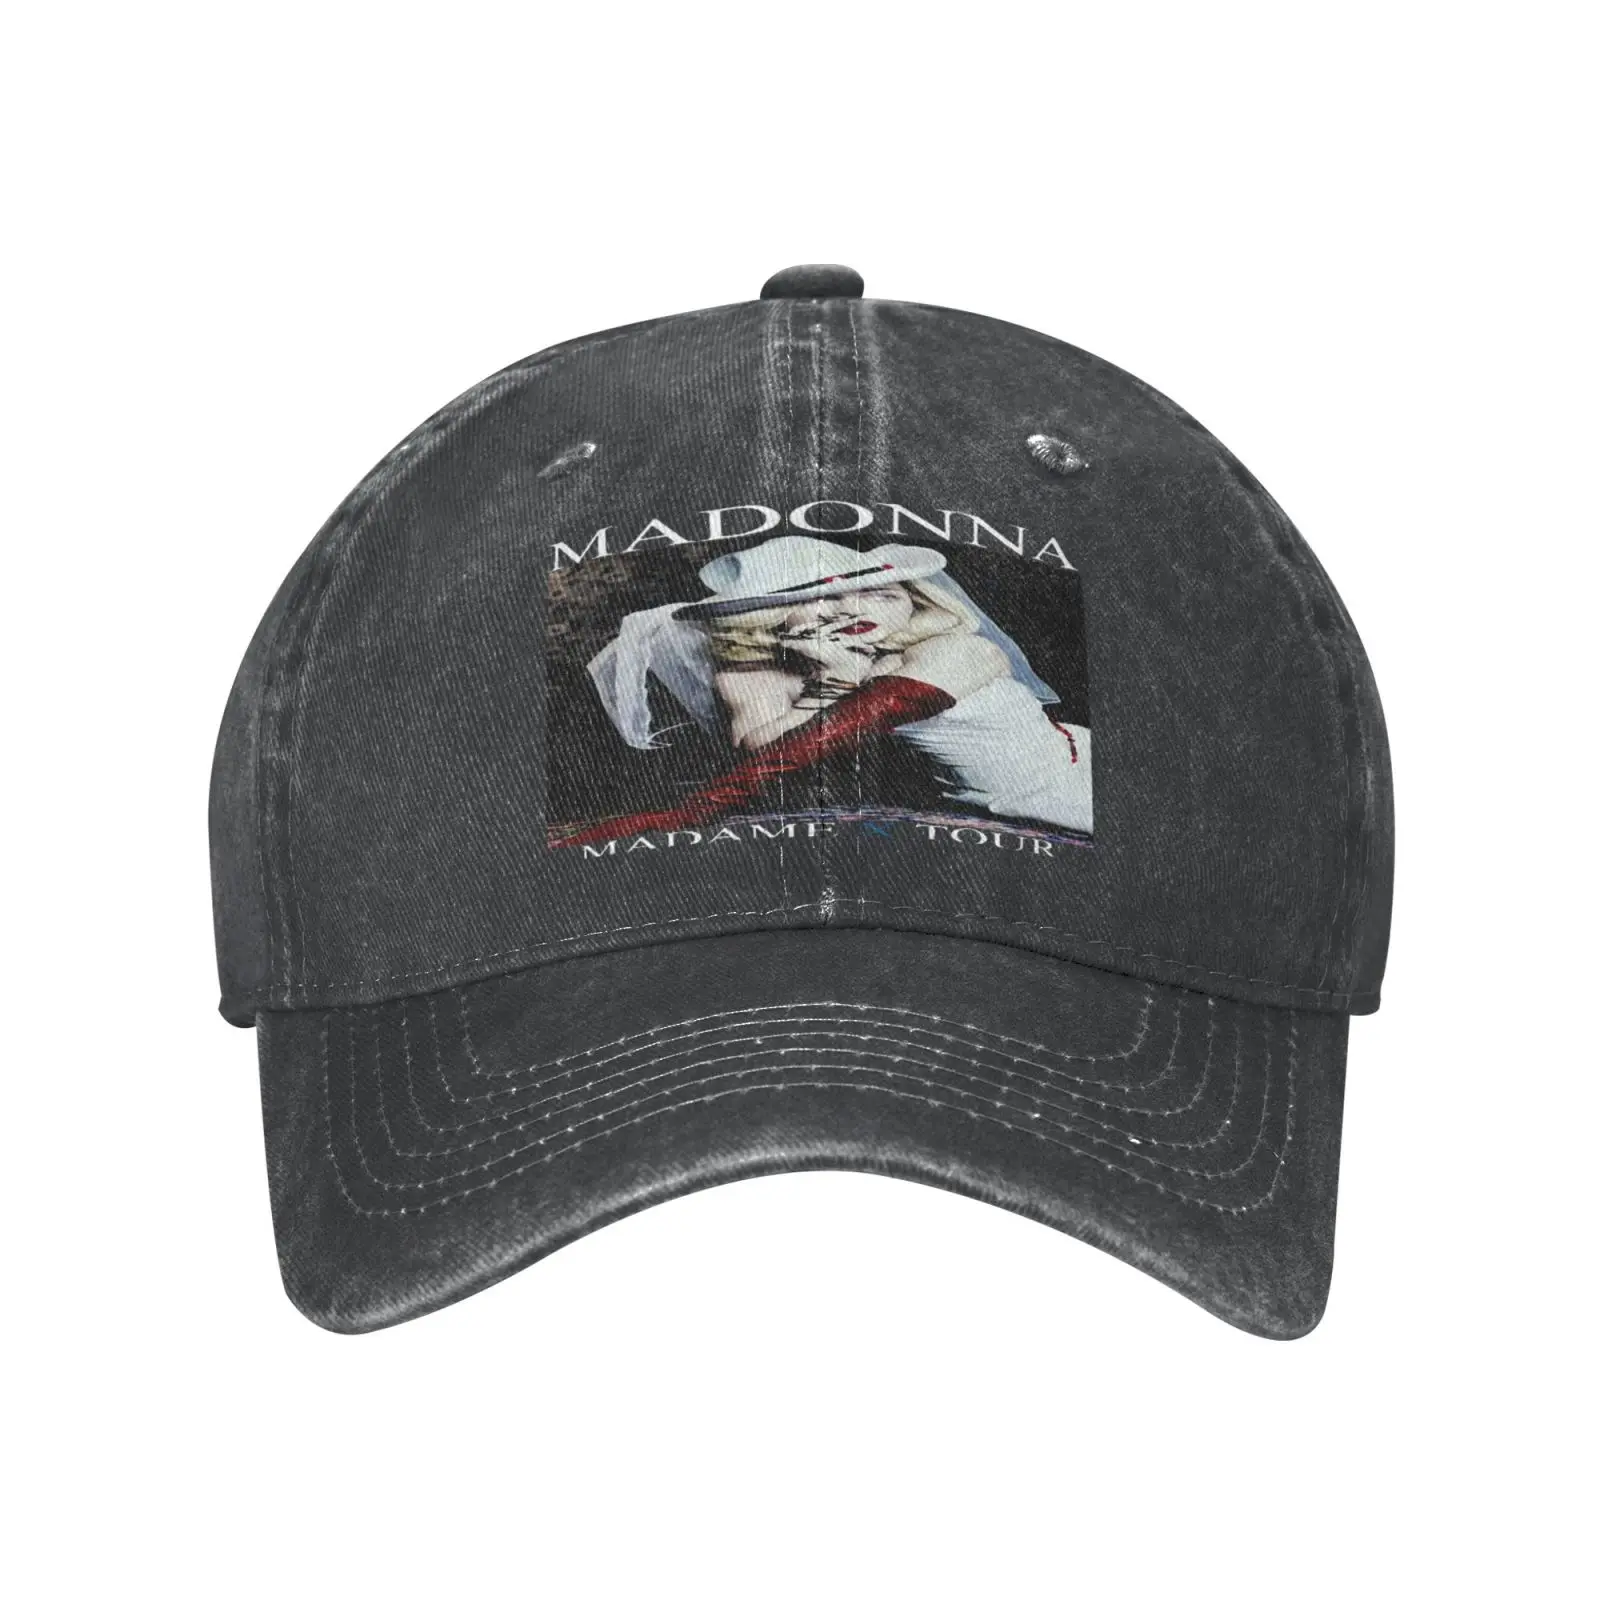 

Бейсболка Madonna мадам X Tour 2019 2 для мужчин и женщин, кепка атласная Кепка, кепка для женщин и мужчин, шапка бини, шапка для мужчин и женщин